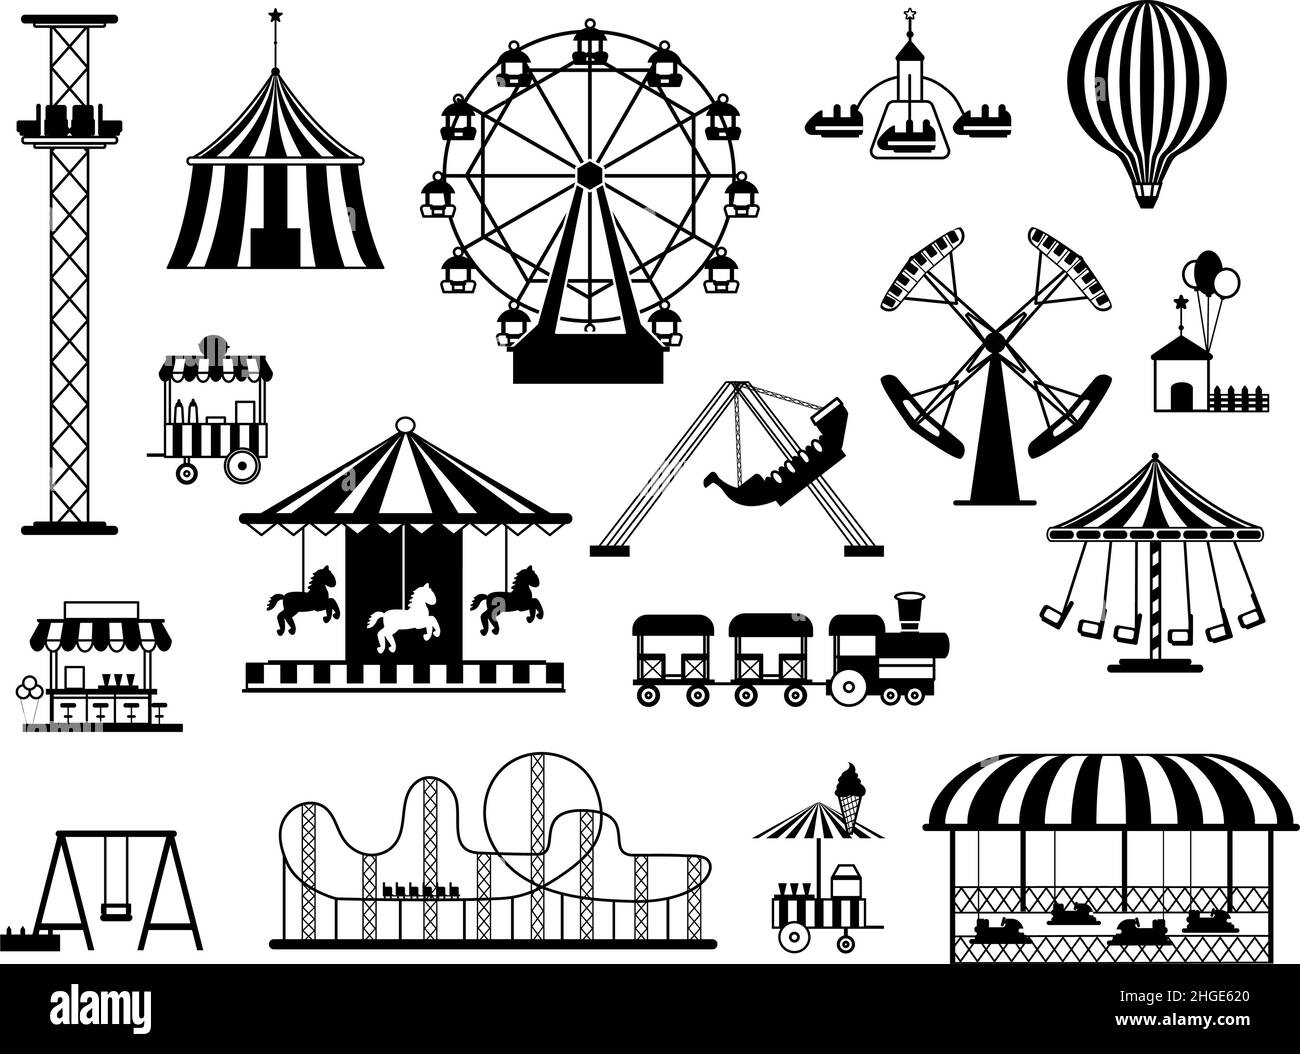 Divertissement parc de carnaval attractions et caressels silhouettes noires.Tente de cirque funfair, balançoires, train et ballon d'air chaud vecteur ensemble Illustration de Vecteur